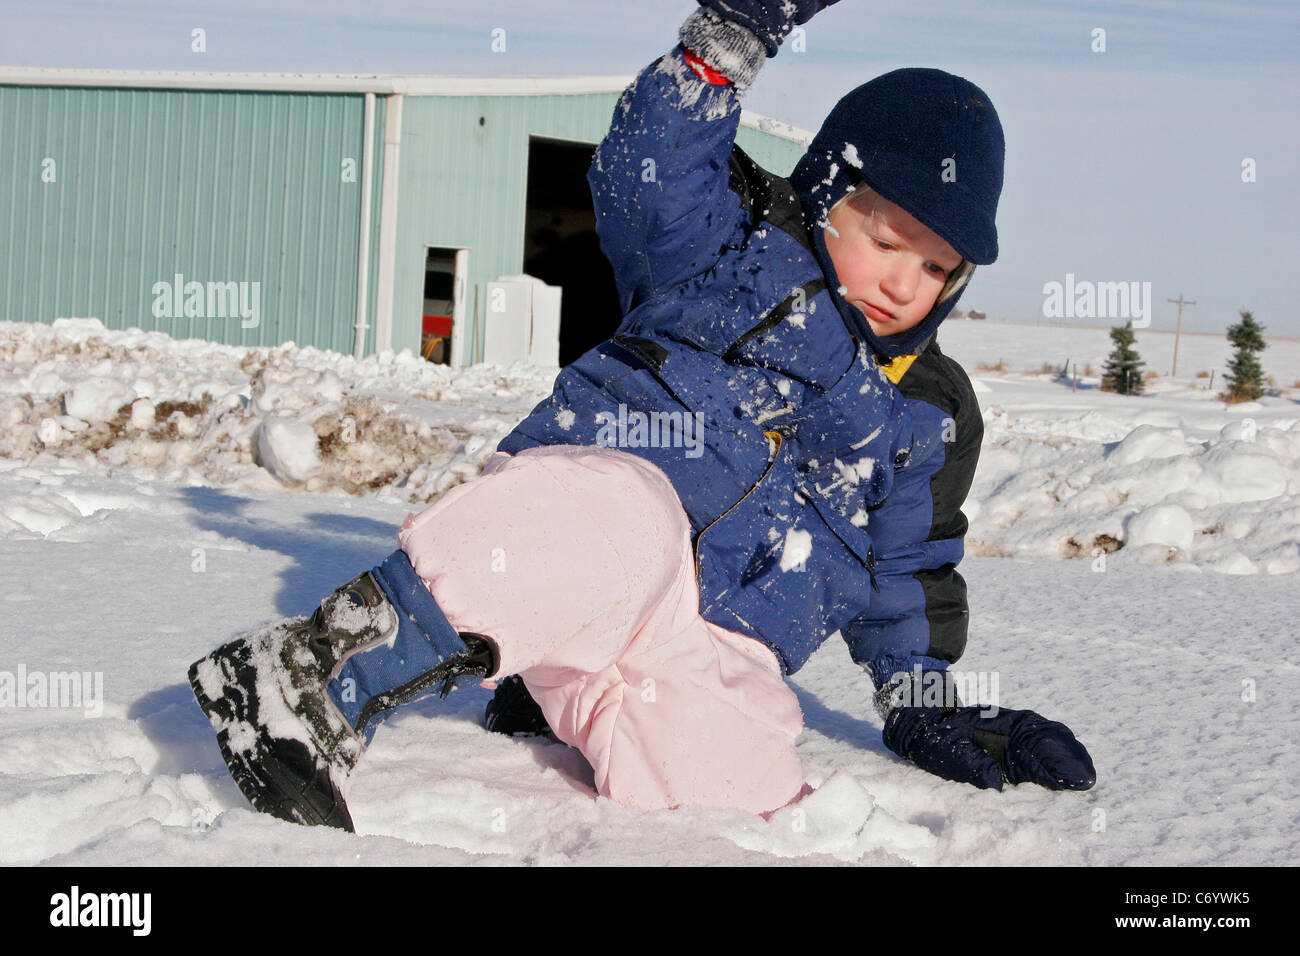 Chico jugando en la nieve en invierno, la diversión de invierno Foto de stock